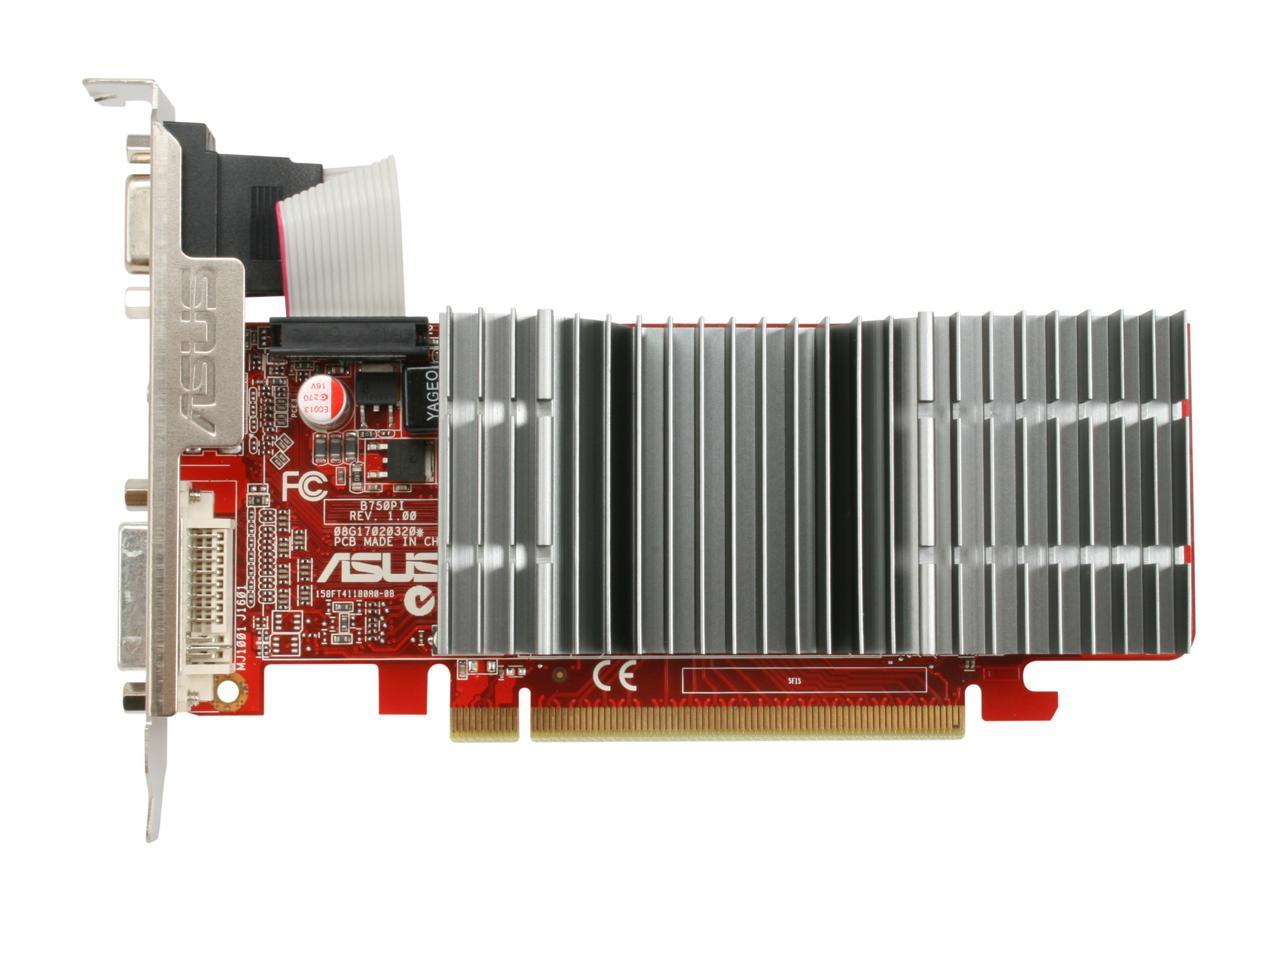 ASUS Radeon HD 4350 Video Card EAH4350 SILENT/DI/512MD2 